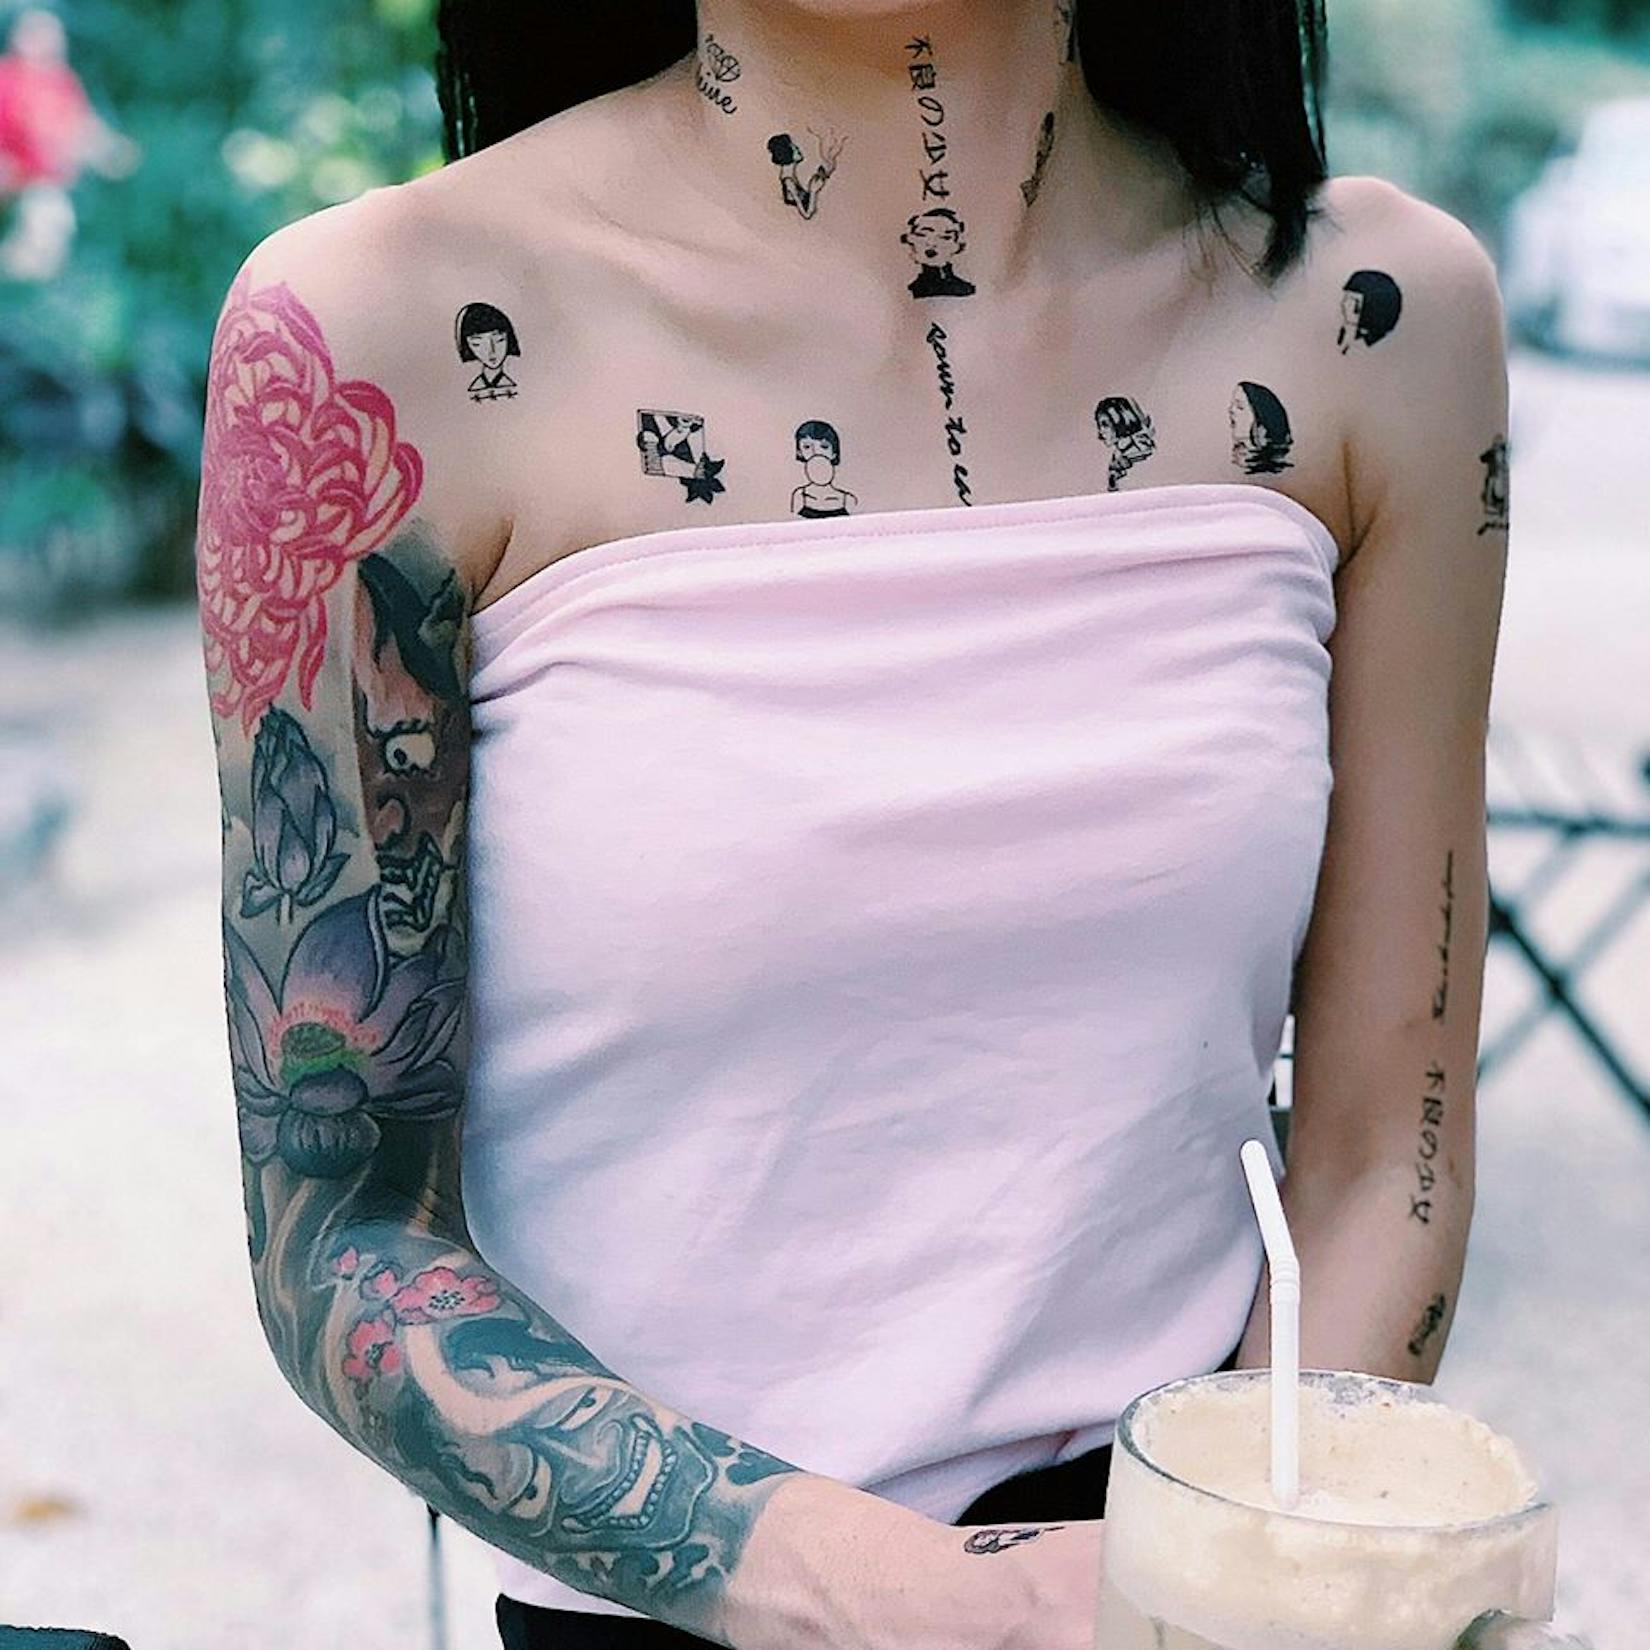 SweetZ tattoo Ink | Beauty